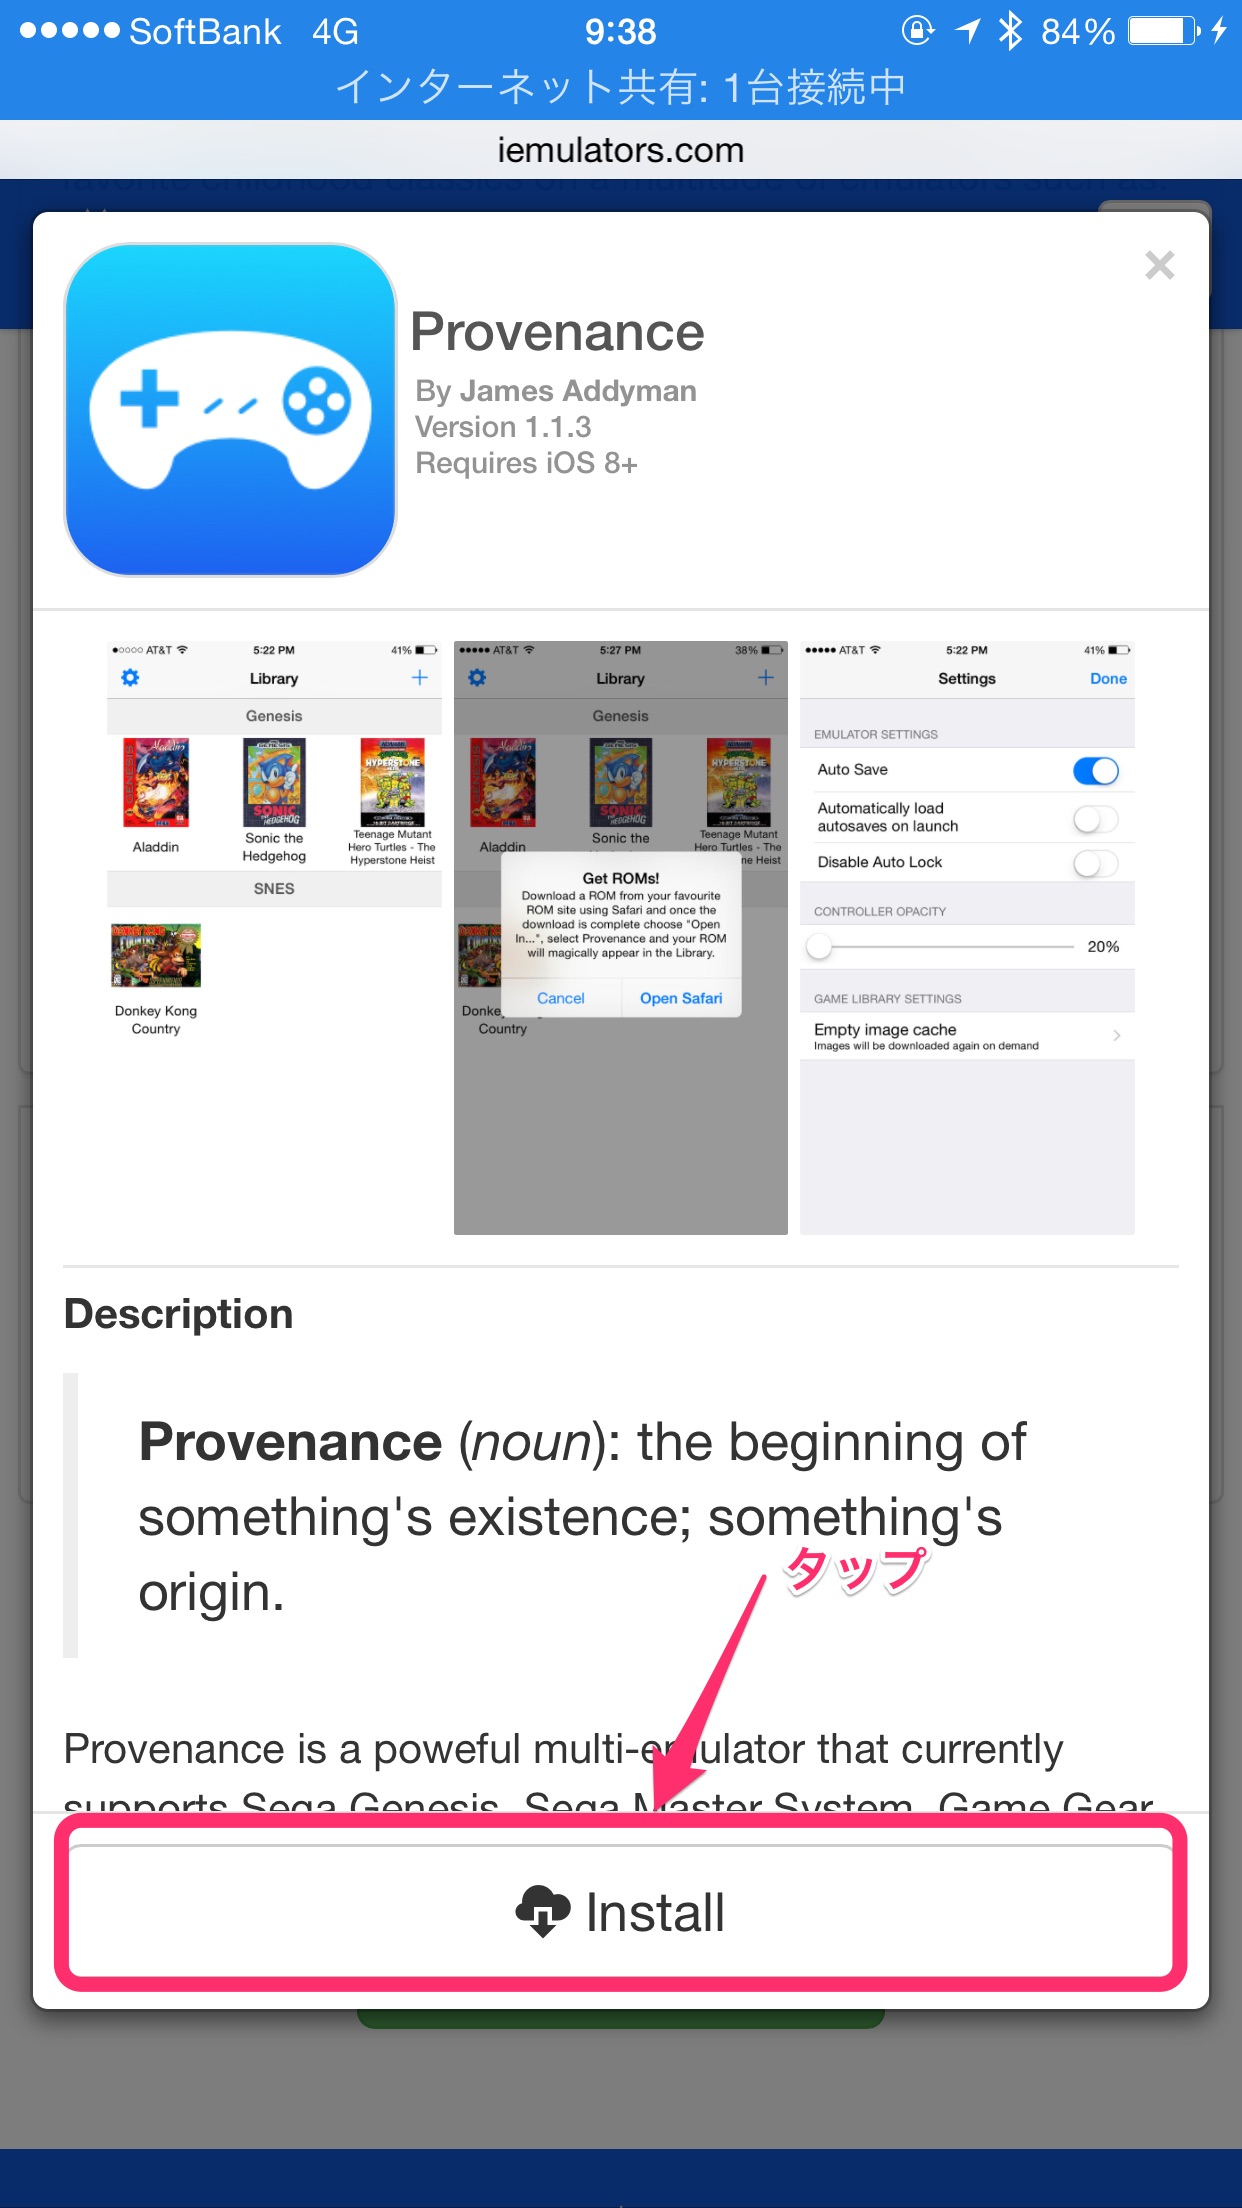 iOS向けマルチエミュレータ｢Provenance｣が脱獄不要でダウンロード可能に ｰ スーファミやメガドライブなどをサポート